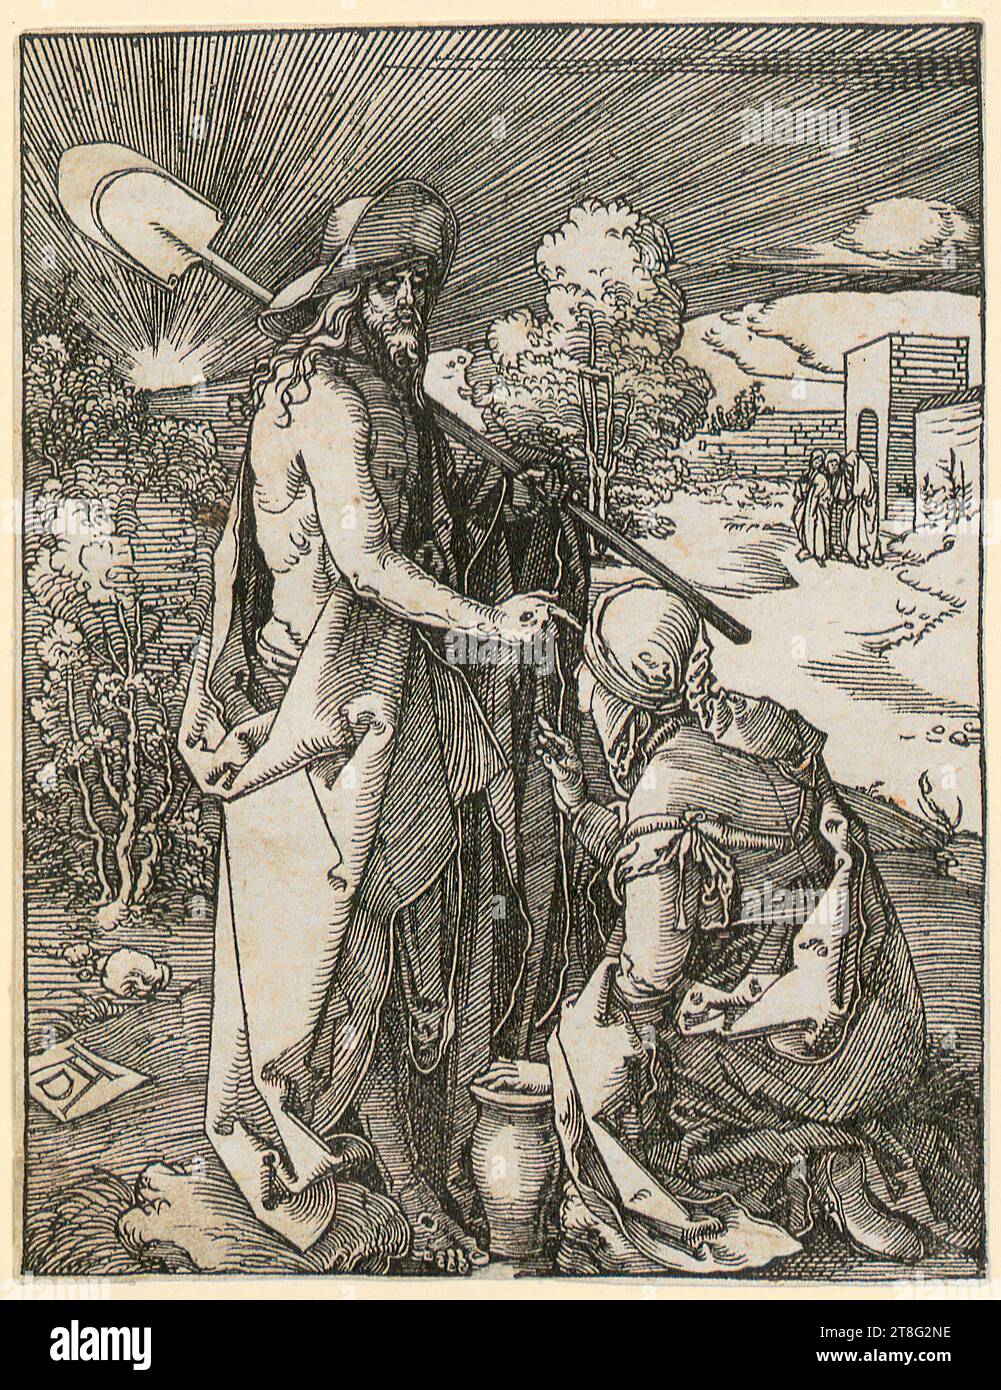 Albrecht Dürer (1471 - 1528), piccola xilografia passione, Albrecht Dürer (1471 - 1528), artista, Cristo appare a Maddalena, foglio 32 della serie 'piccola passione xilografica', origine del mezzo di stampa: Circa 1510, xilografia, dimensione foglio: 12,7 x 9,8 cm, monogramma 'ad' in basso a sinistra sulla lastra Foto Stock